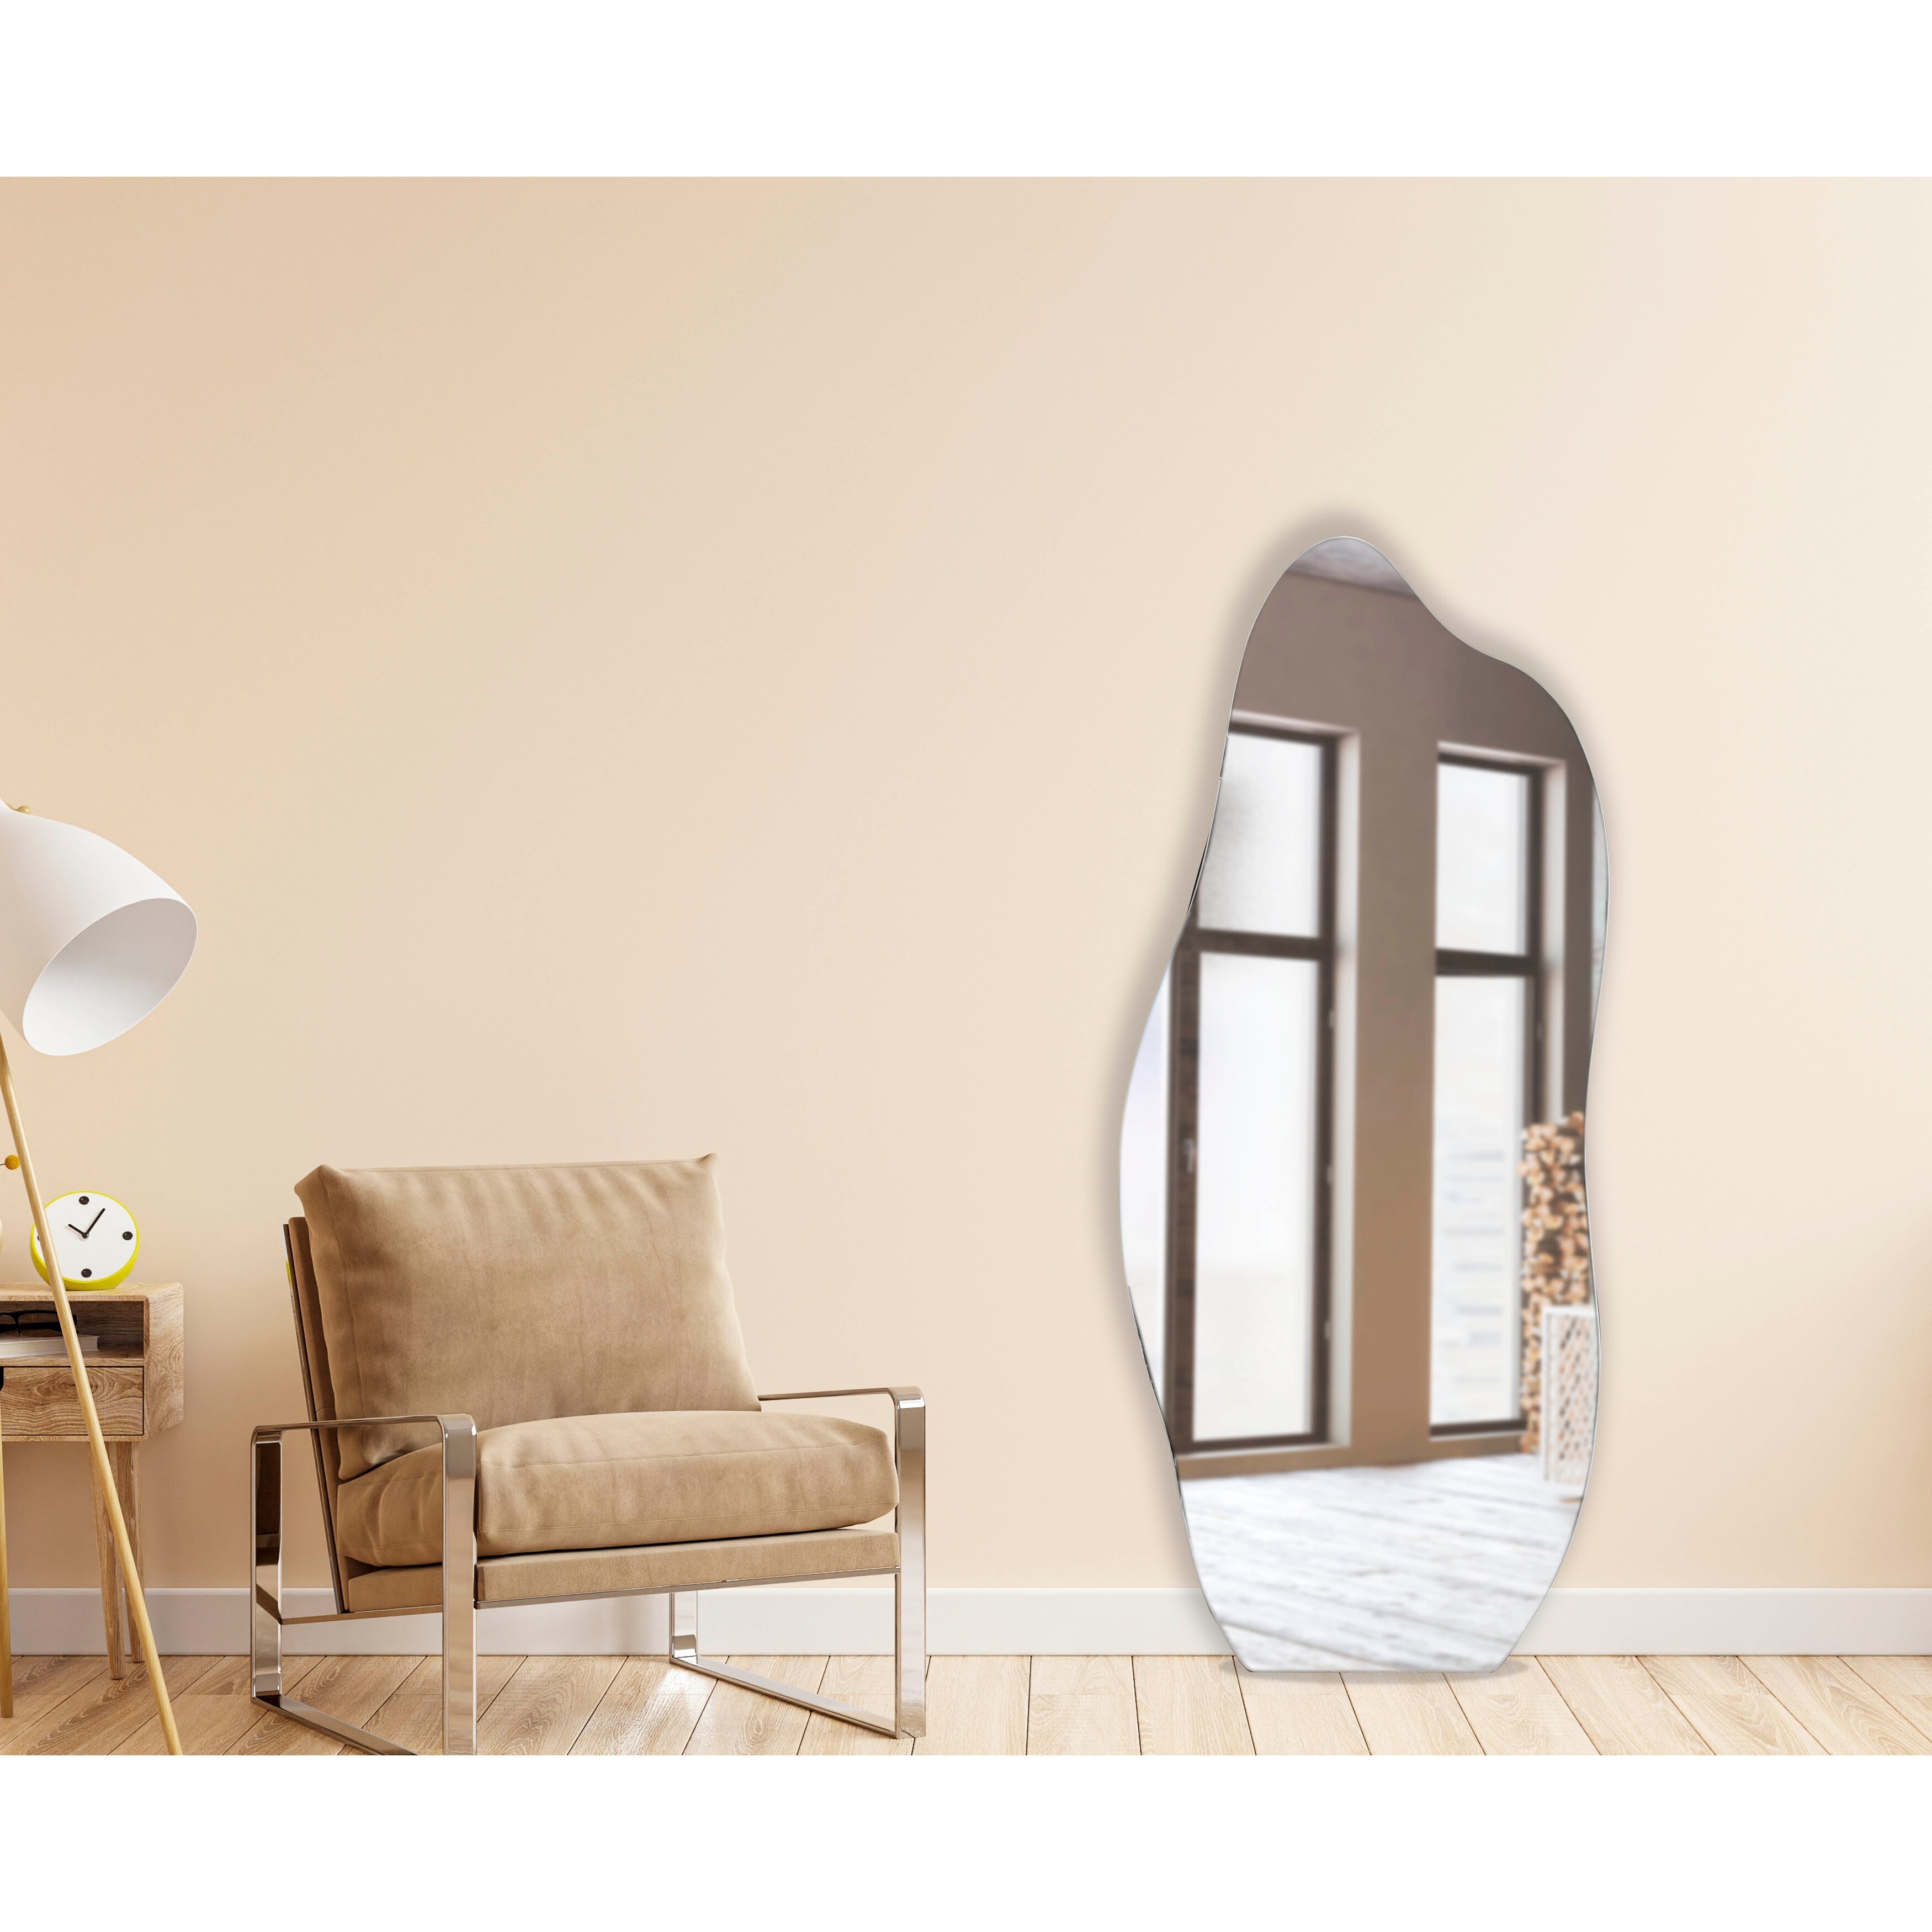 Irregular Mirror Home Decor, Asymmetrical Wall Decor, Aesthetic